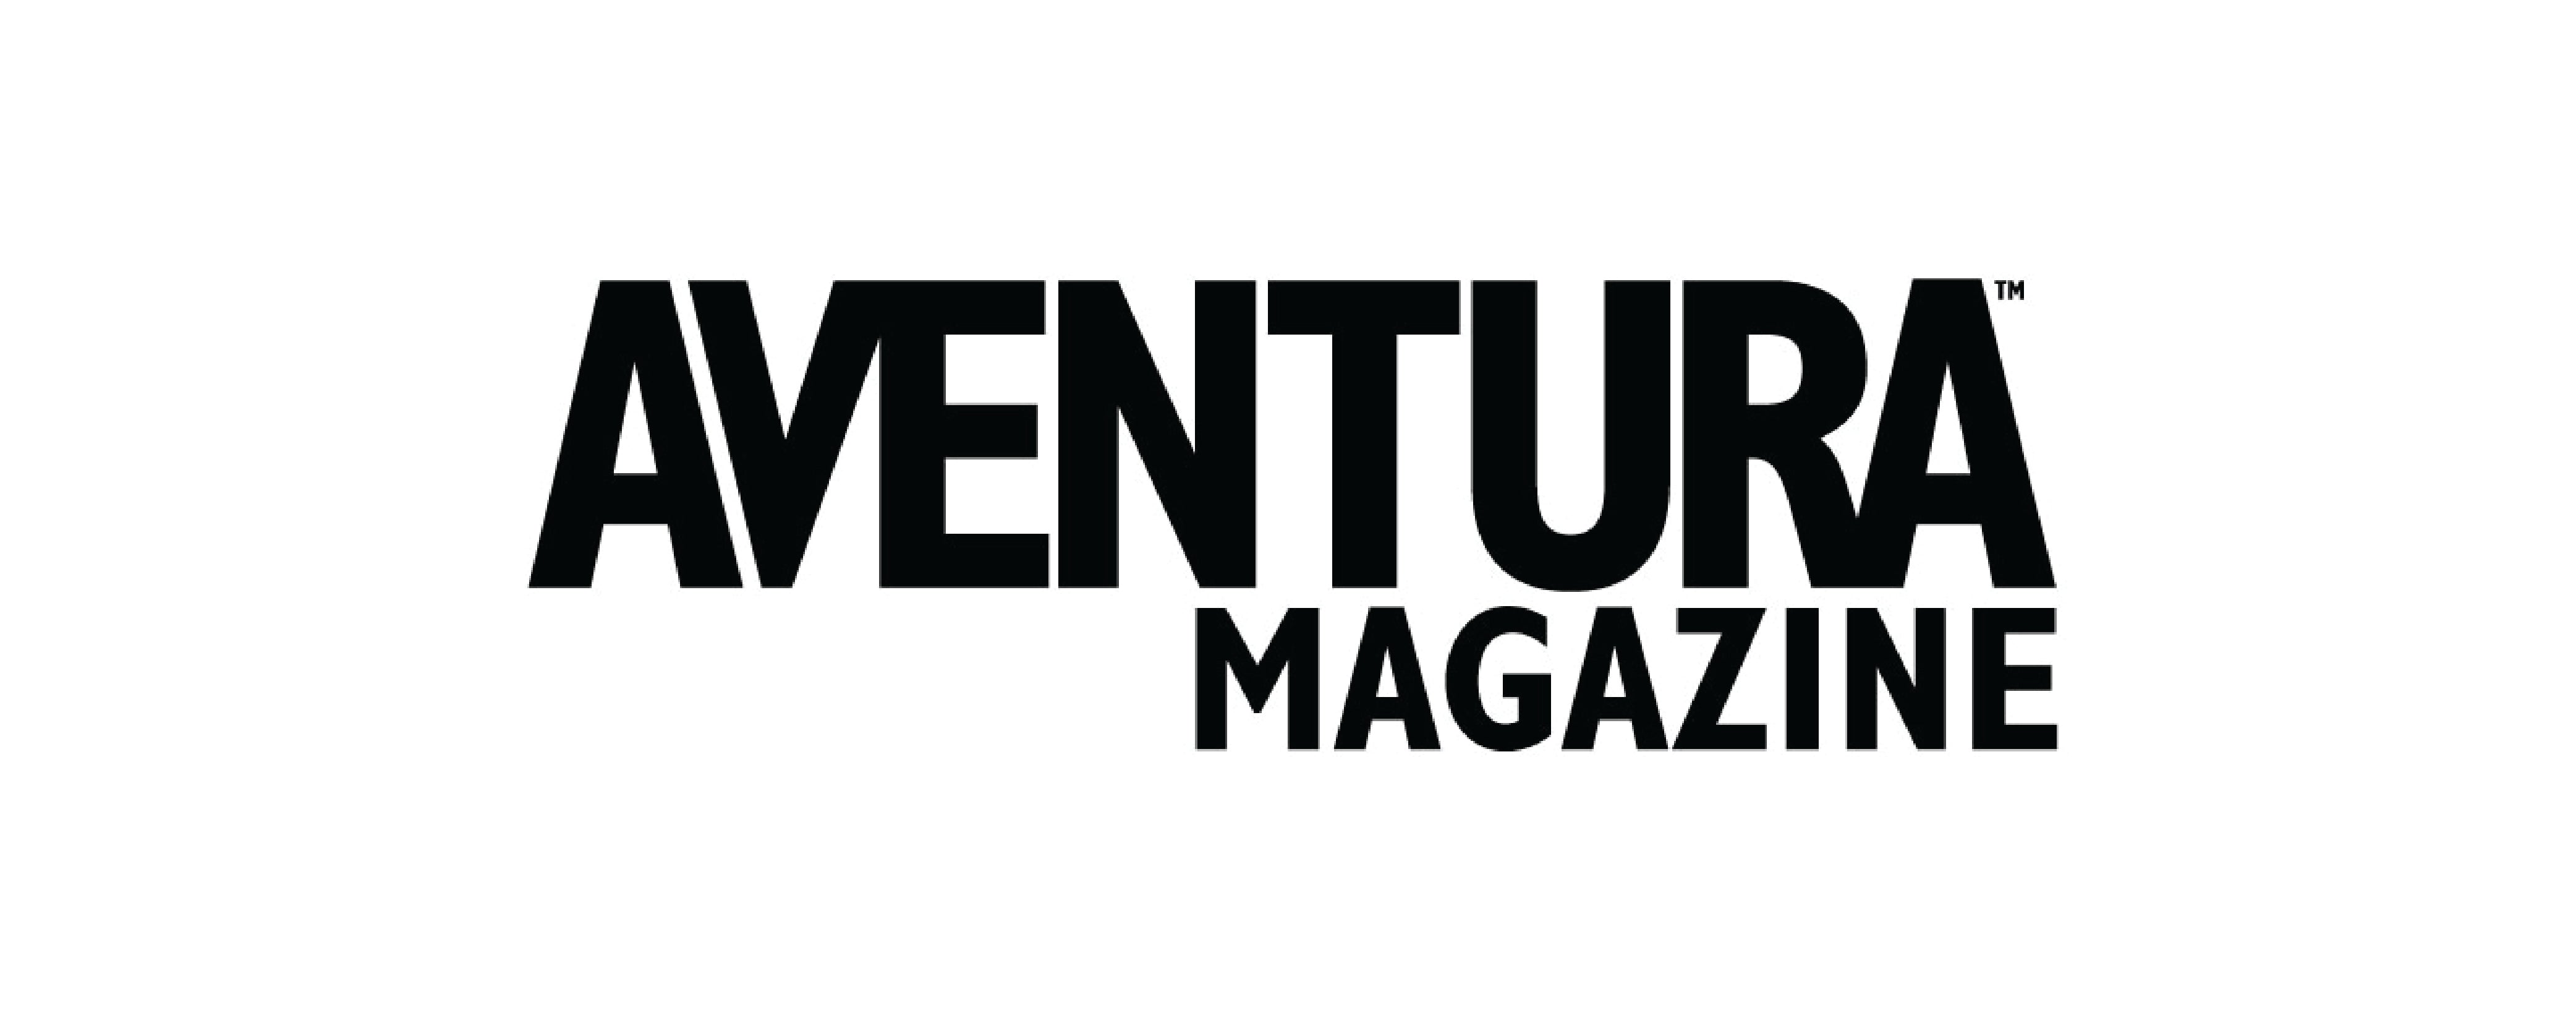 Aventura Magazine- Miami's Got Talent